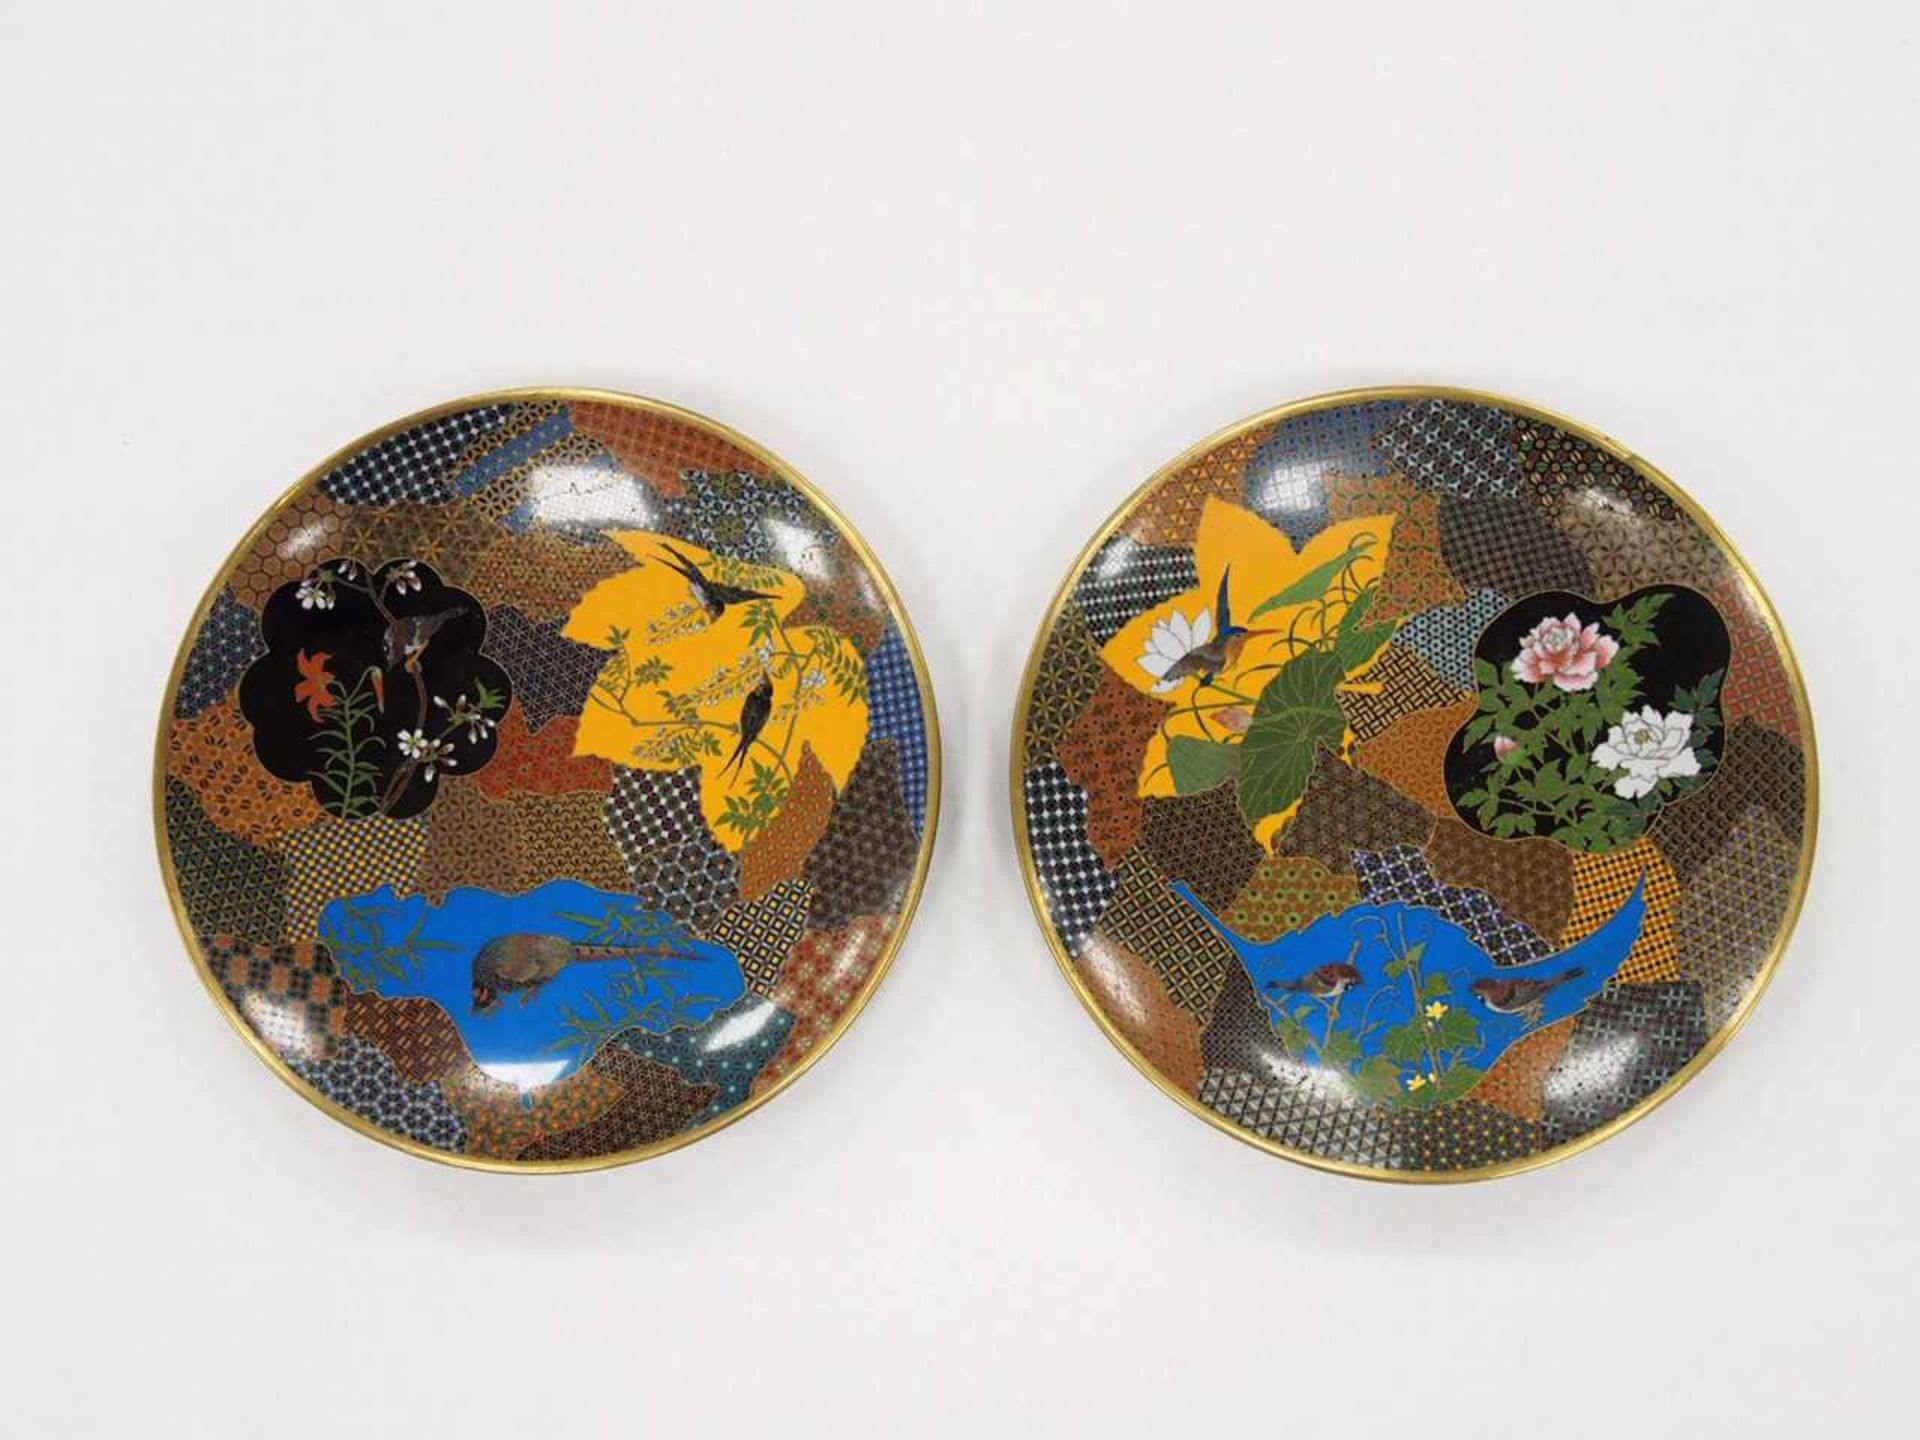 Zwei SchalenKupfer, Cloisonné, Vögel und Blumen, Japan, Meiji-Zeit, um 1900, Durchmesser je 23 cm